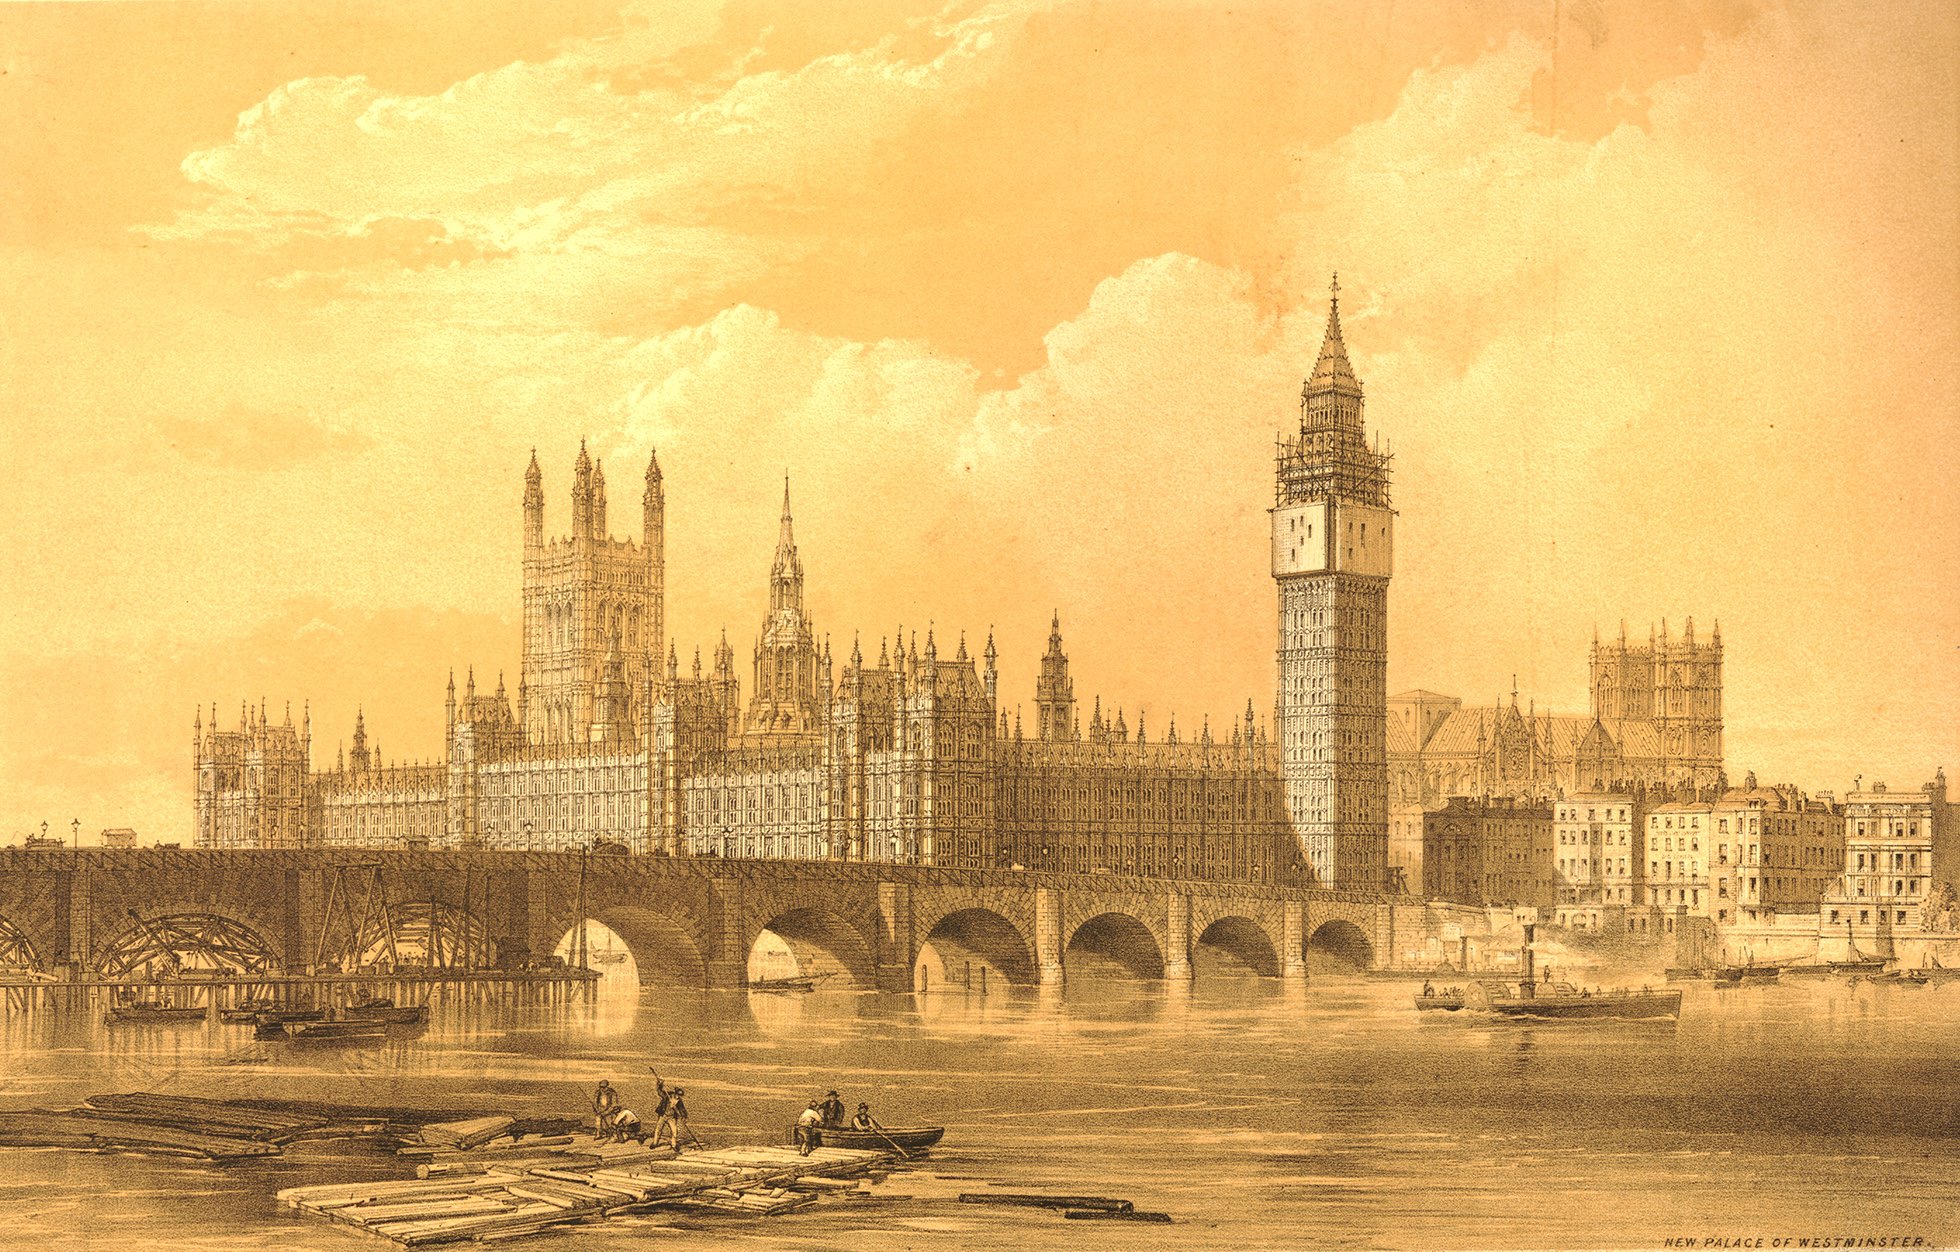 Основан лондон году. Вестминстерский дворец Лондон Викторианская эпоха. Вестминстер Лондон 17 век. Лондон 16 век Вестминстерский дворец. Вестминстерский дворец 17 век.